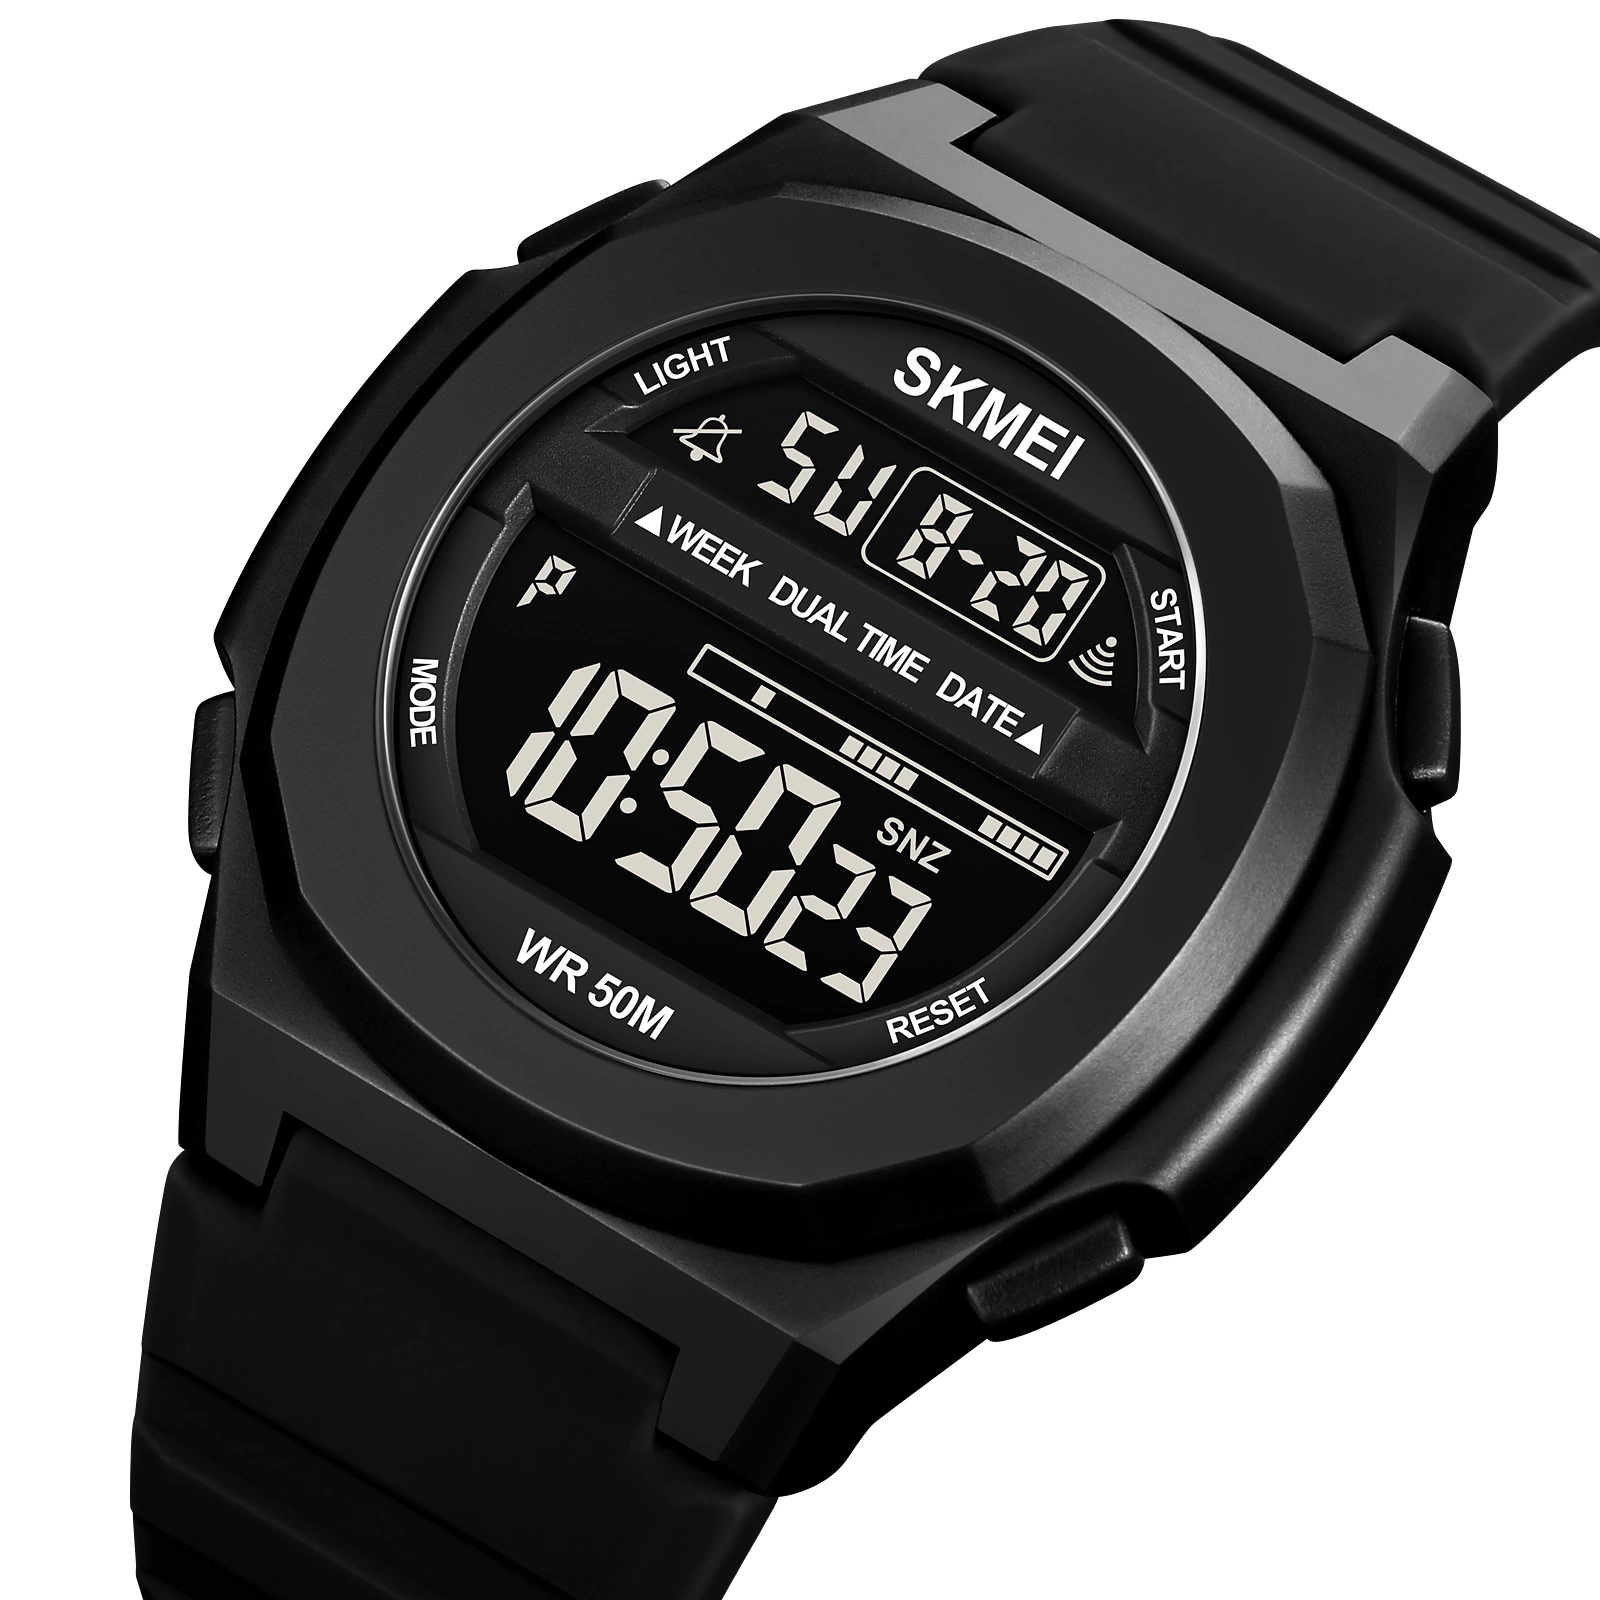 Armbanduhr für Fashion Watch Quarz Uhren Herren Uhr mit Geschenk-Uhr Hochwertige Uhr Digitaluhr in Analog-Digital-Uhr Armbanduhren